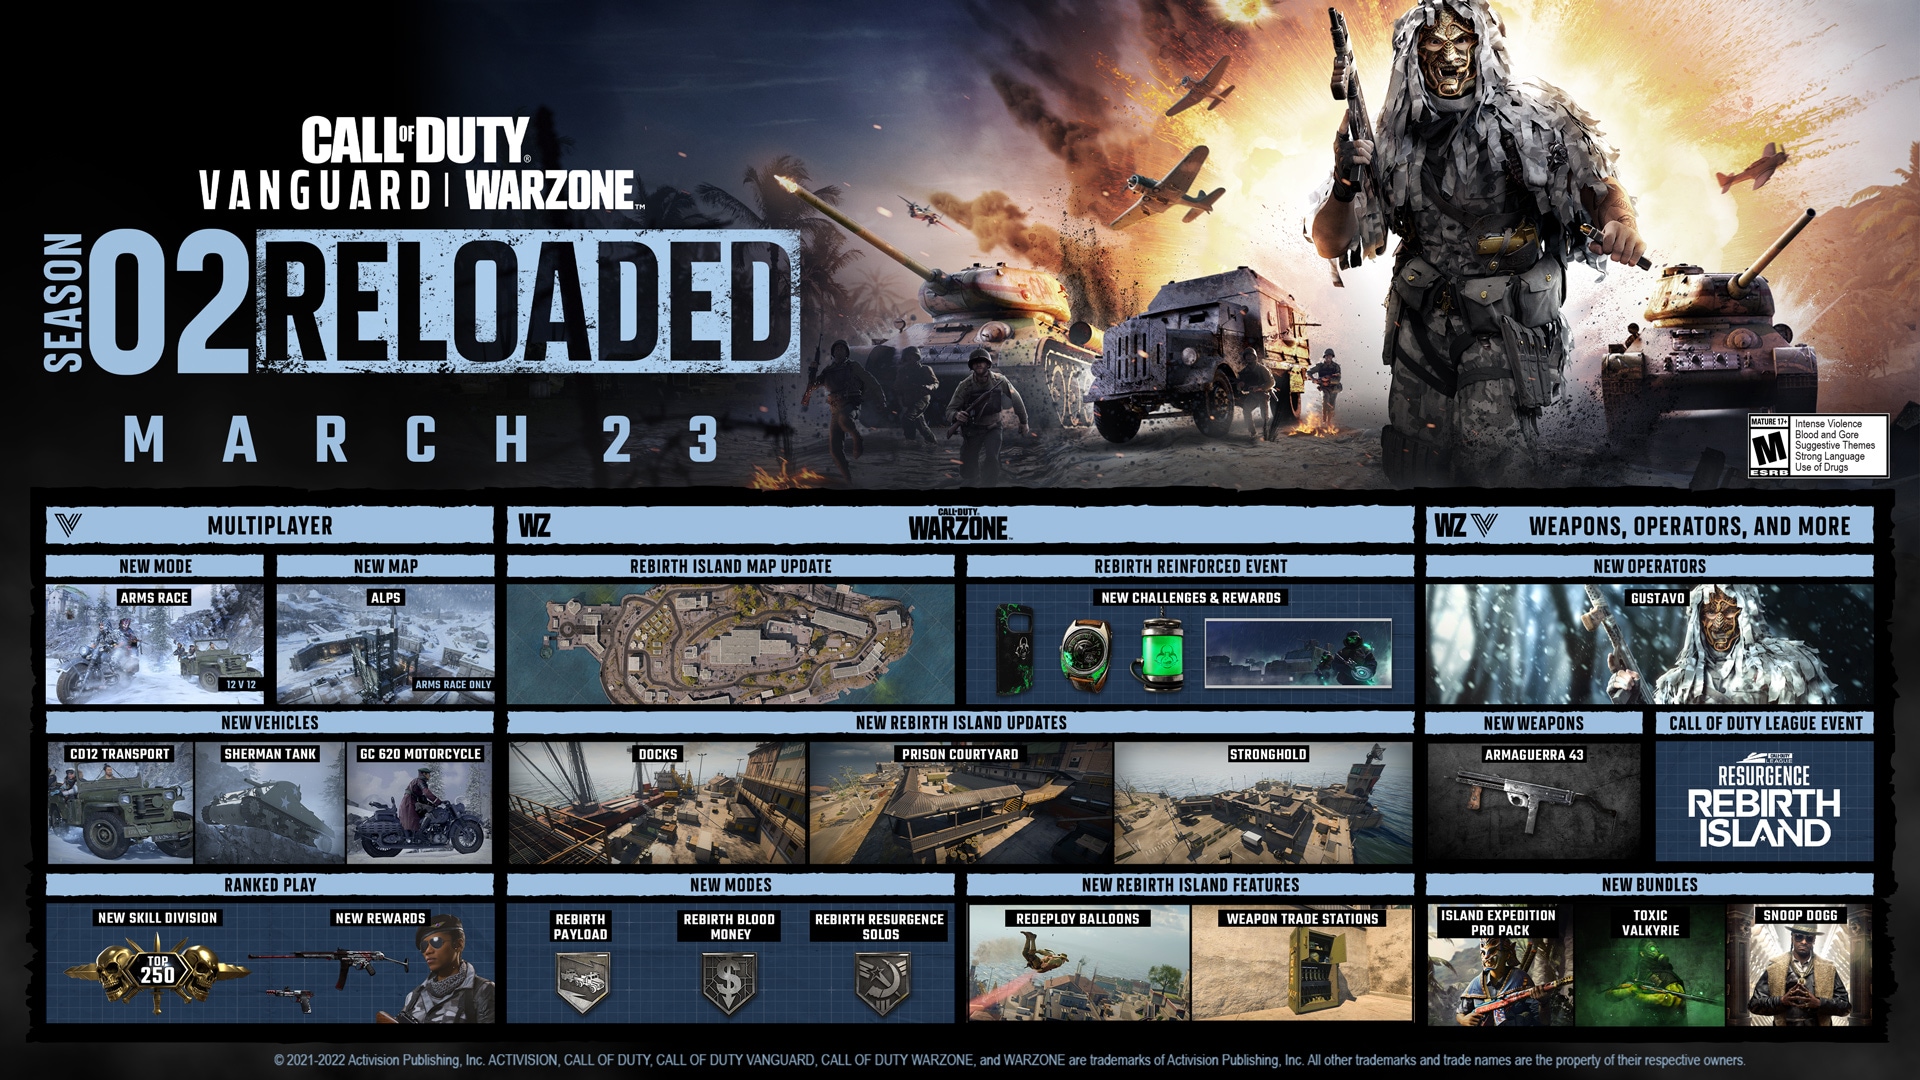 Modo Call of Duty®: Vanguard em Destaque: Jogo de Armas: Projetos